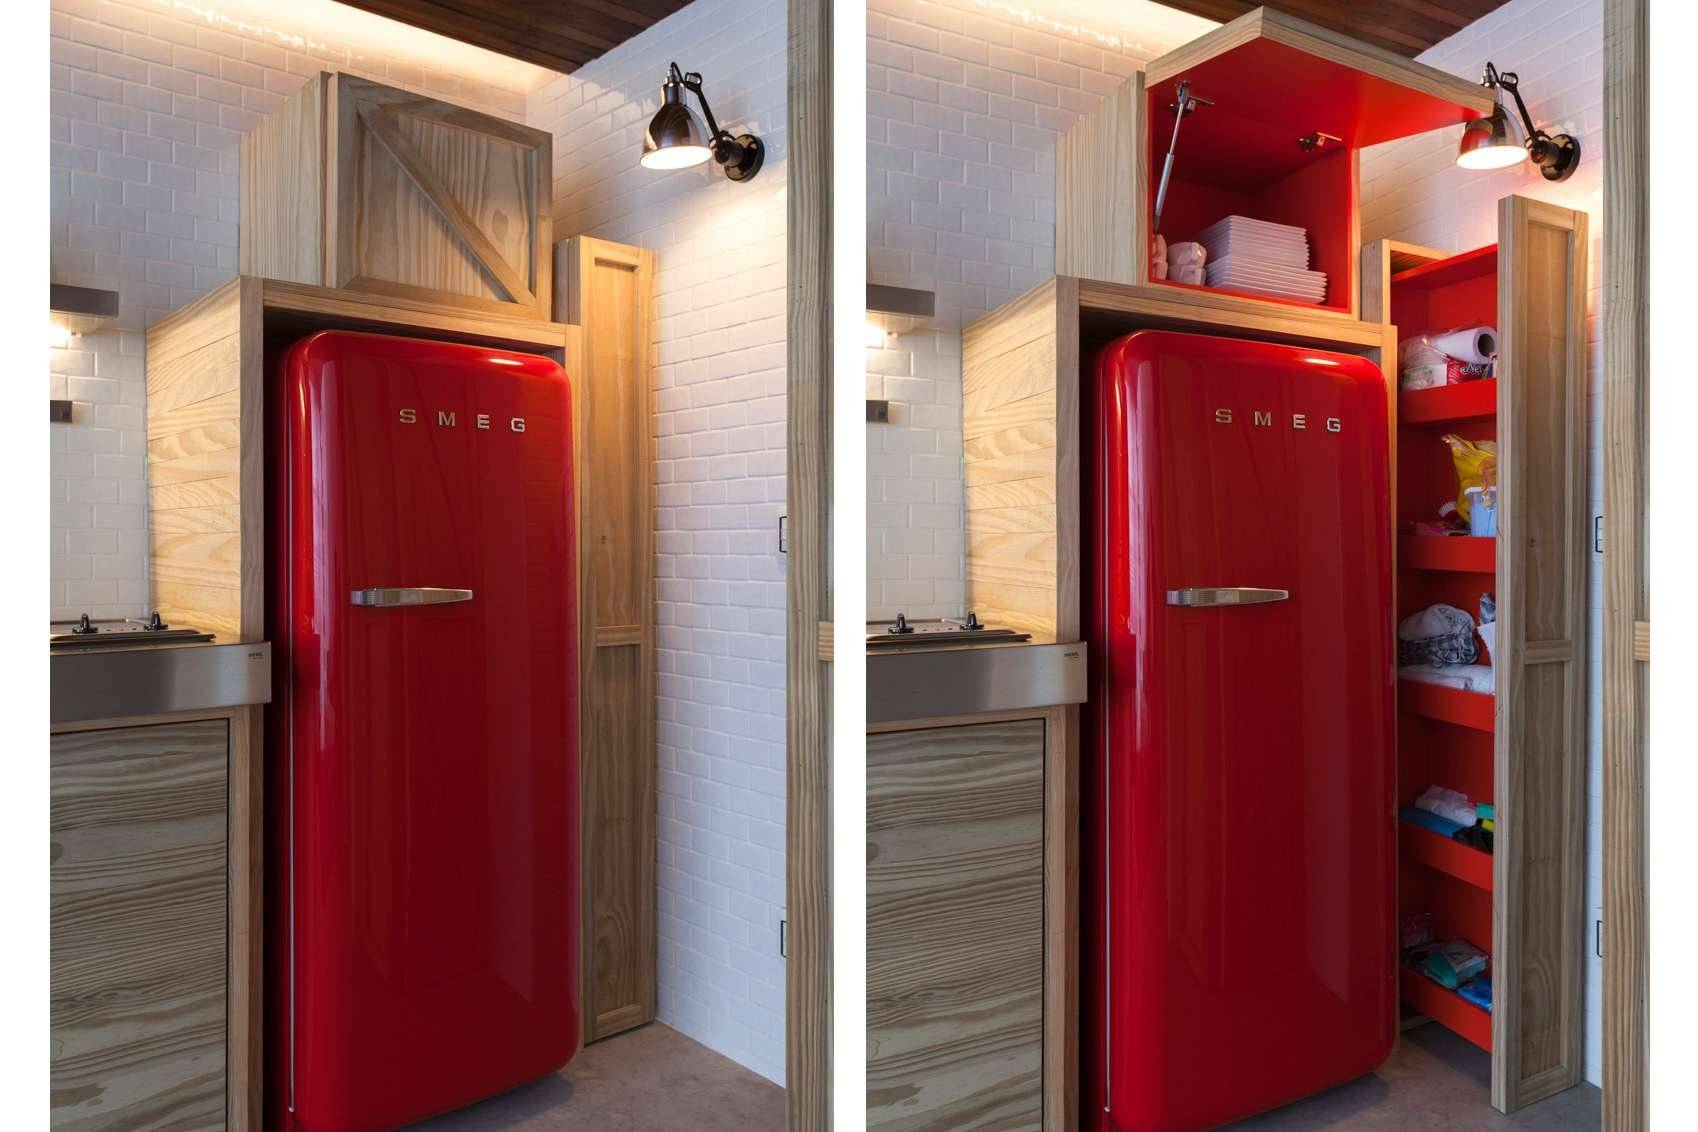 Холодильник в коридоре – как расположить удобно и красиво